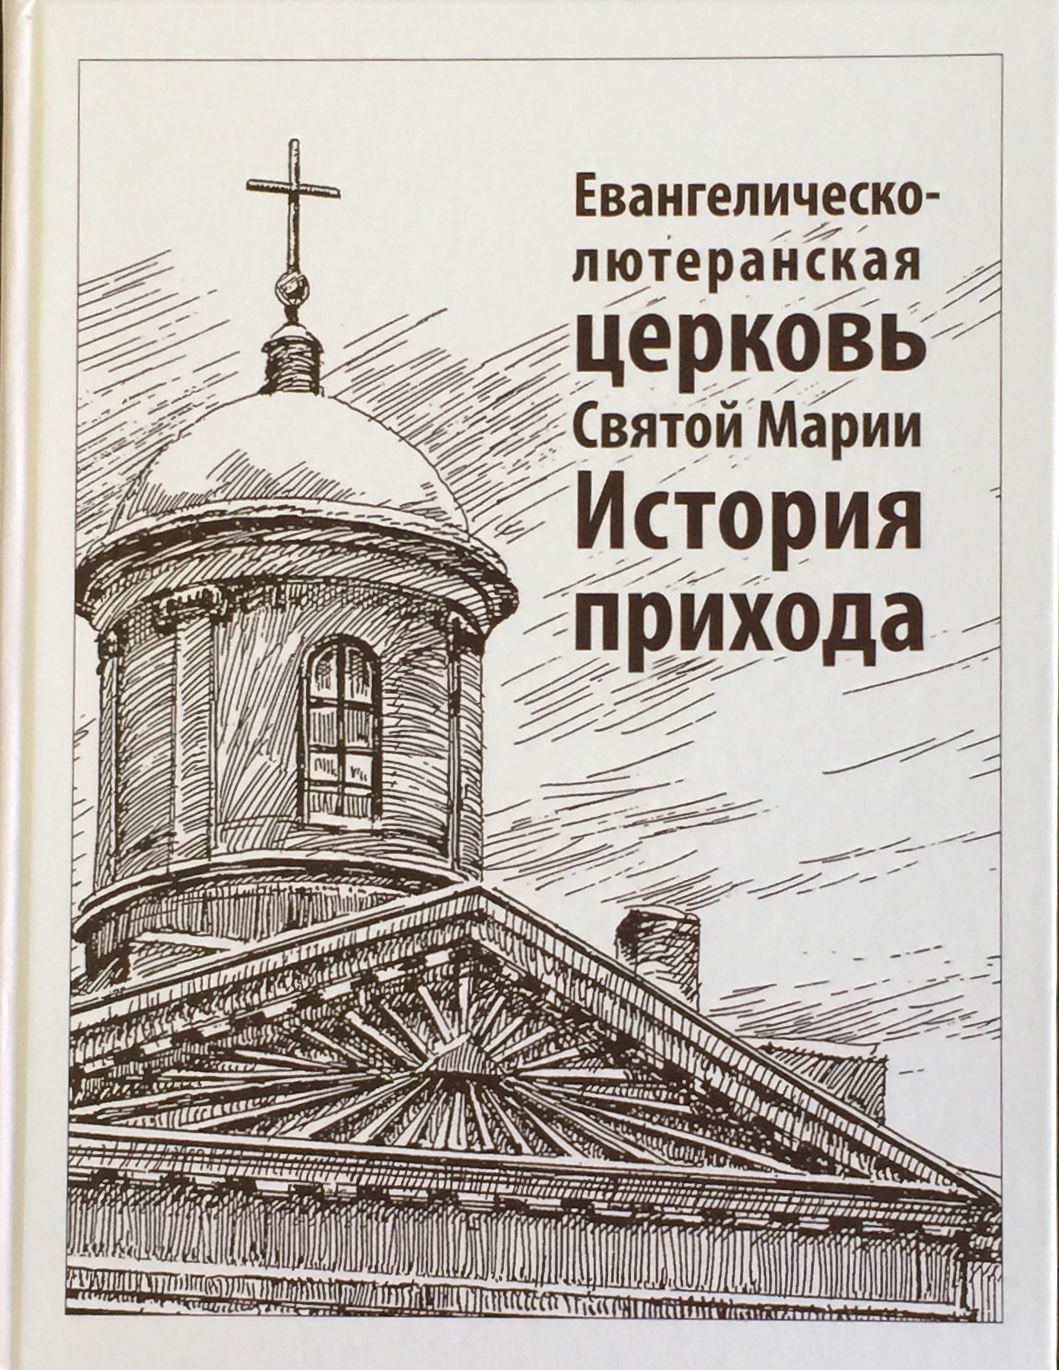 Евангелическо-лютеранская церковь Святой Марии. История прихода